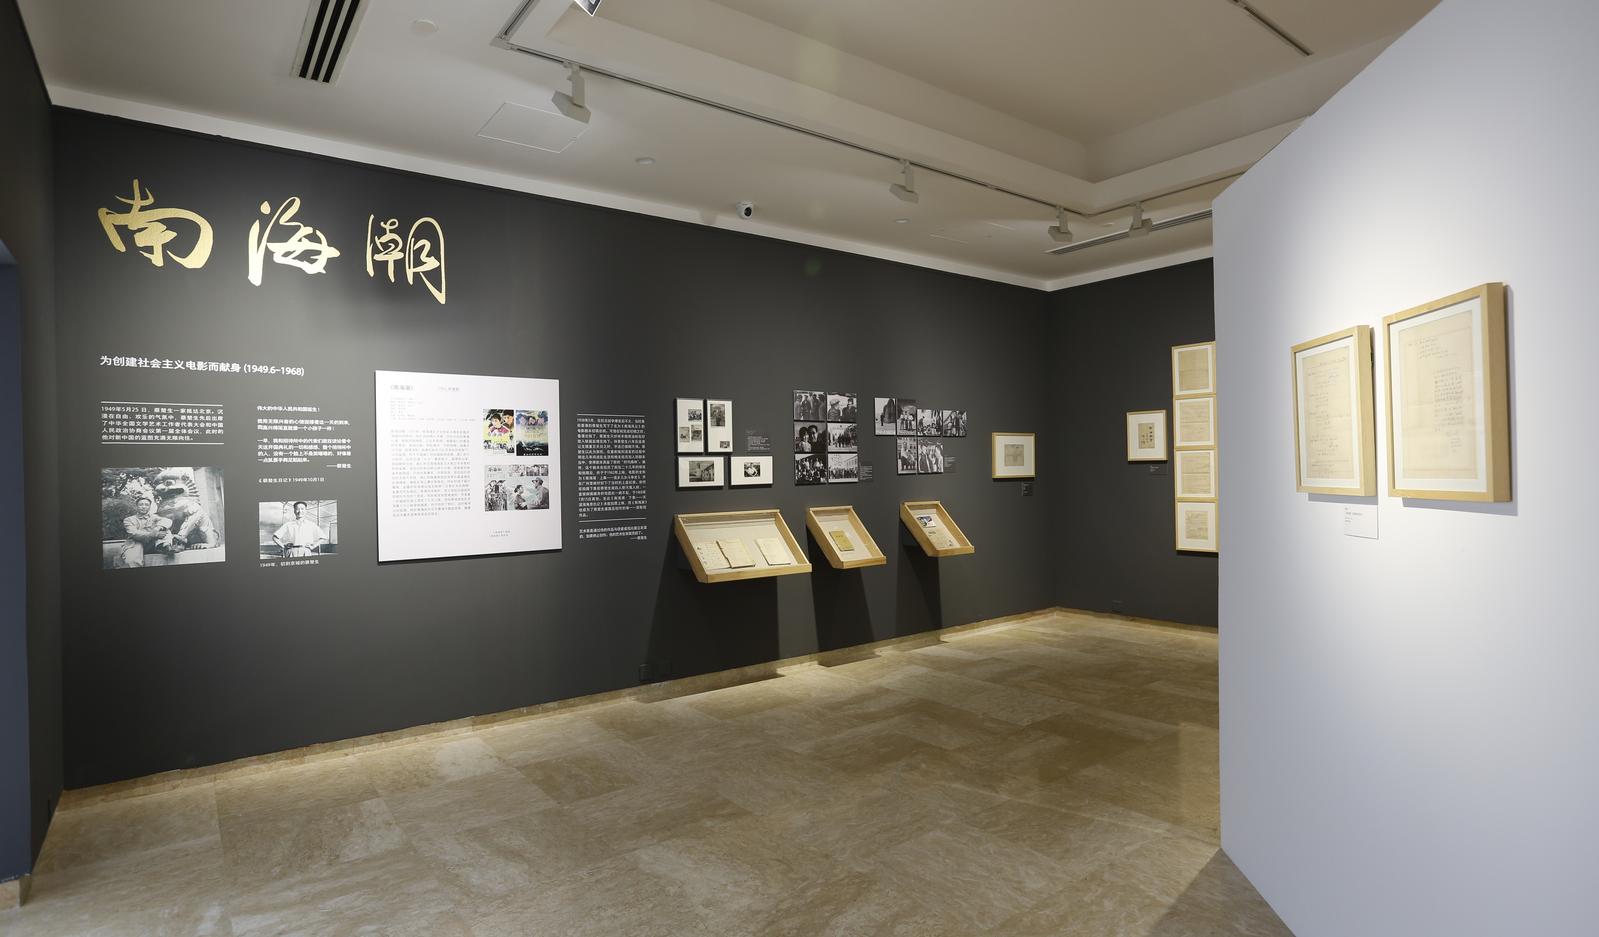 “一江春水向东流——蔡楚生的艺术人生展览”在何香凝美术馆展出